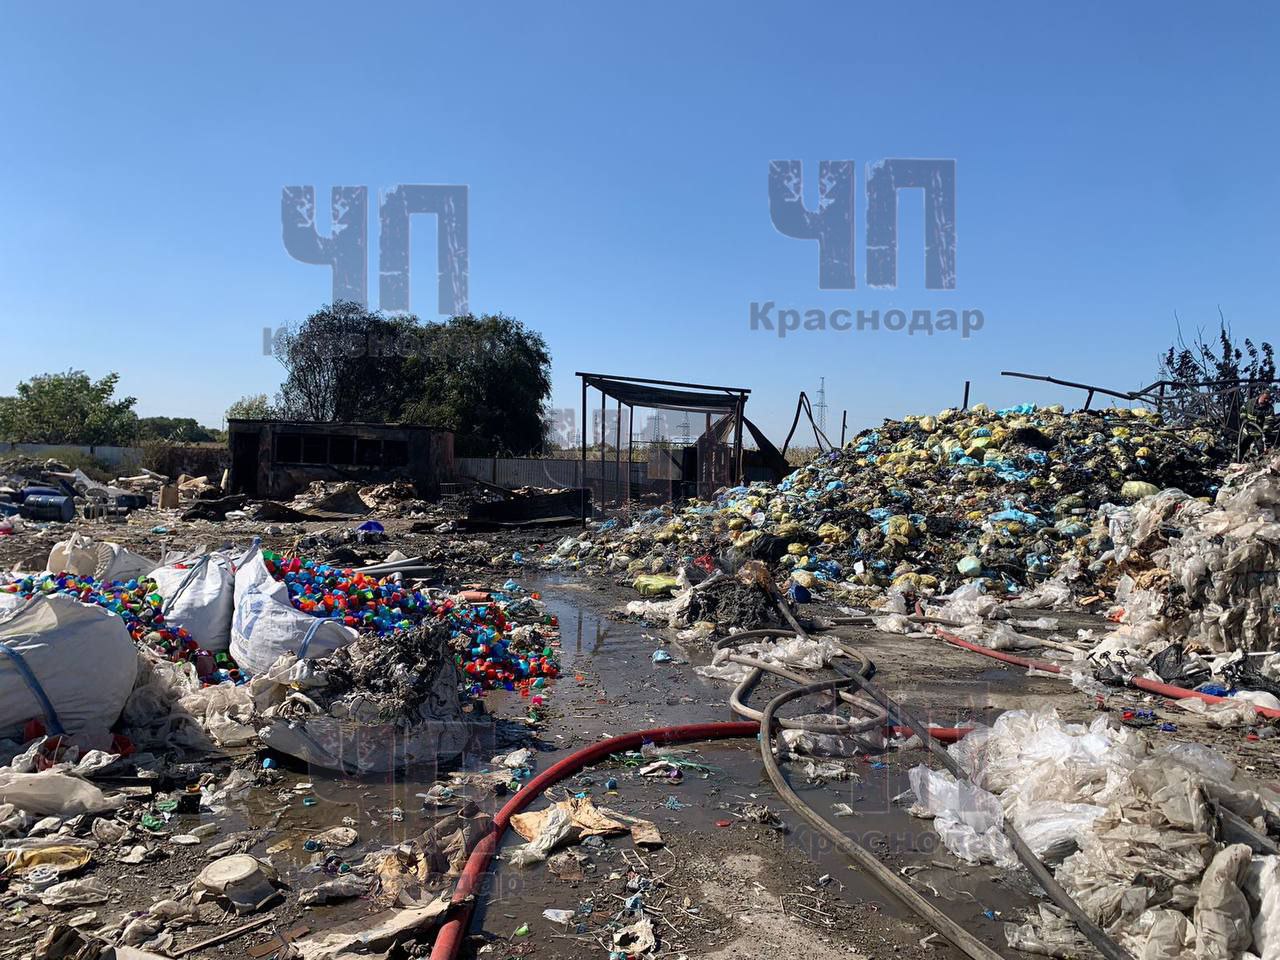 Информацию о нелегальной свалке медицинских отходов проверит прокуратура Краснодара 